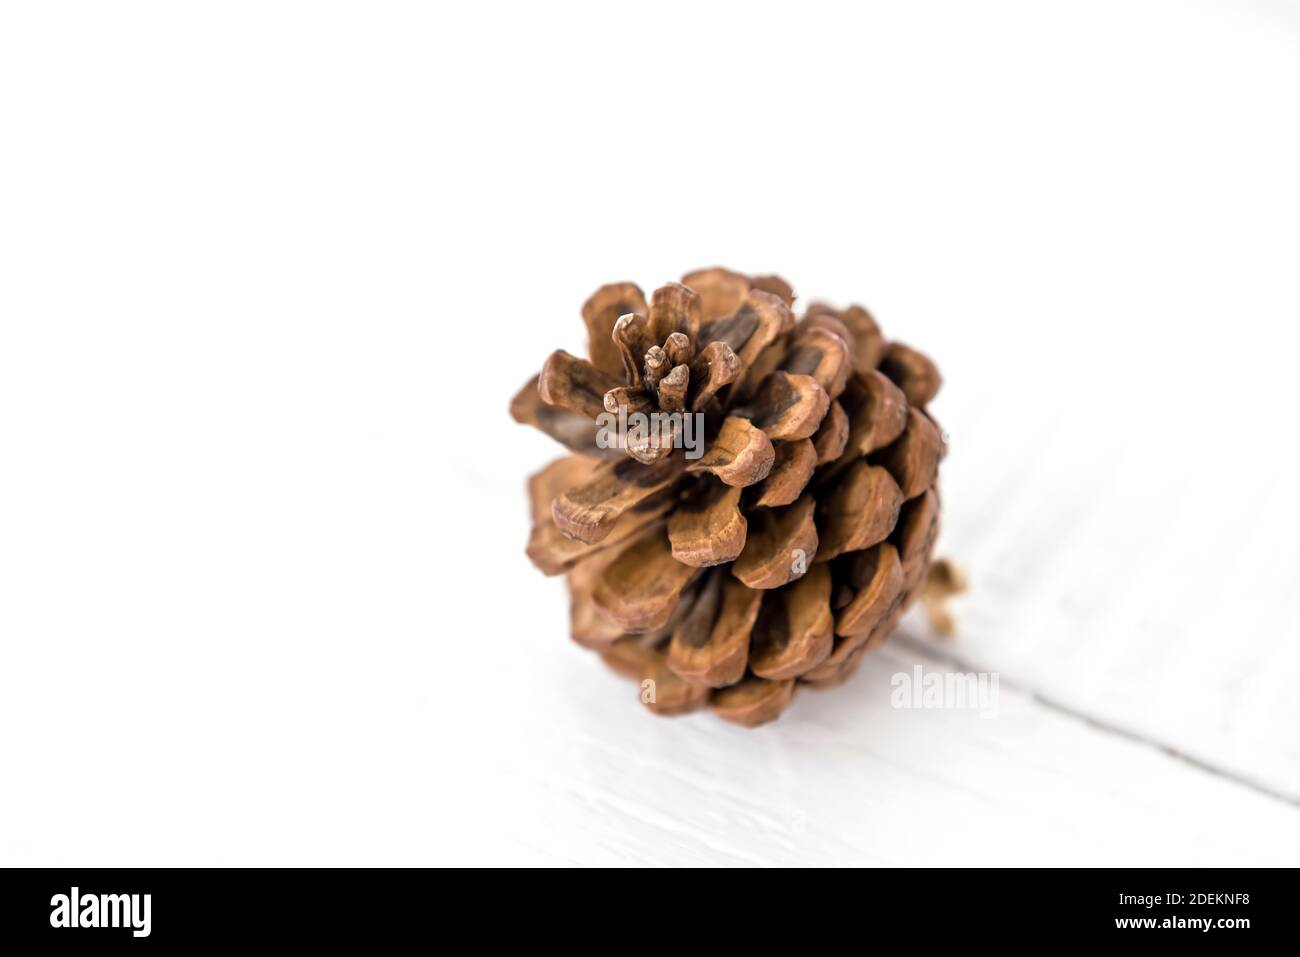 Asciugato piccolo bel cono di pino marrone naturale per la decorazione di Natale o mestiere su sfondo di legno bianco Foto Stock